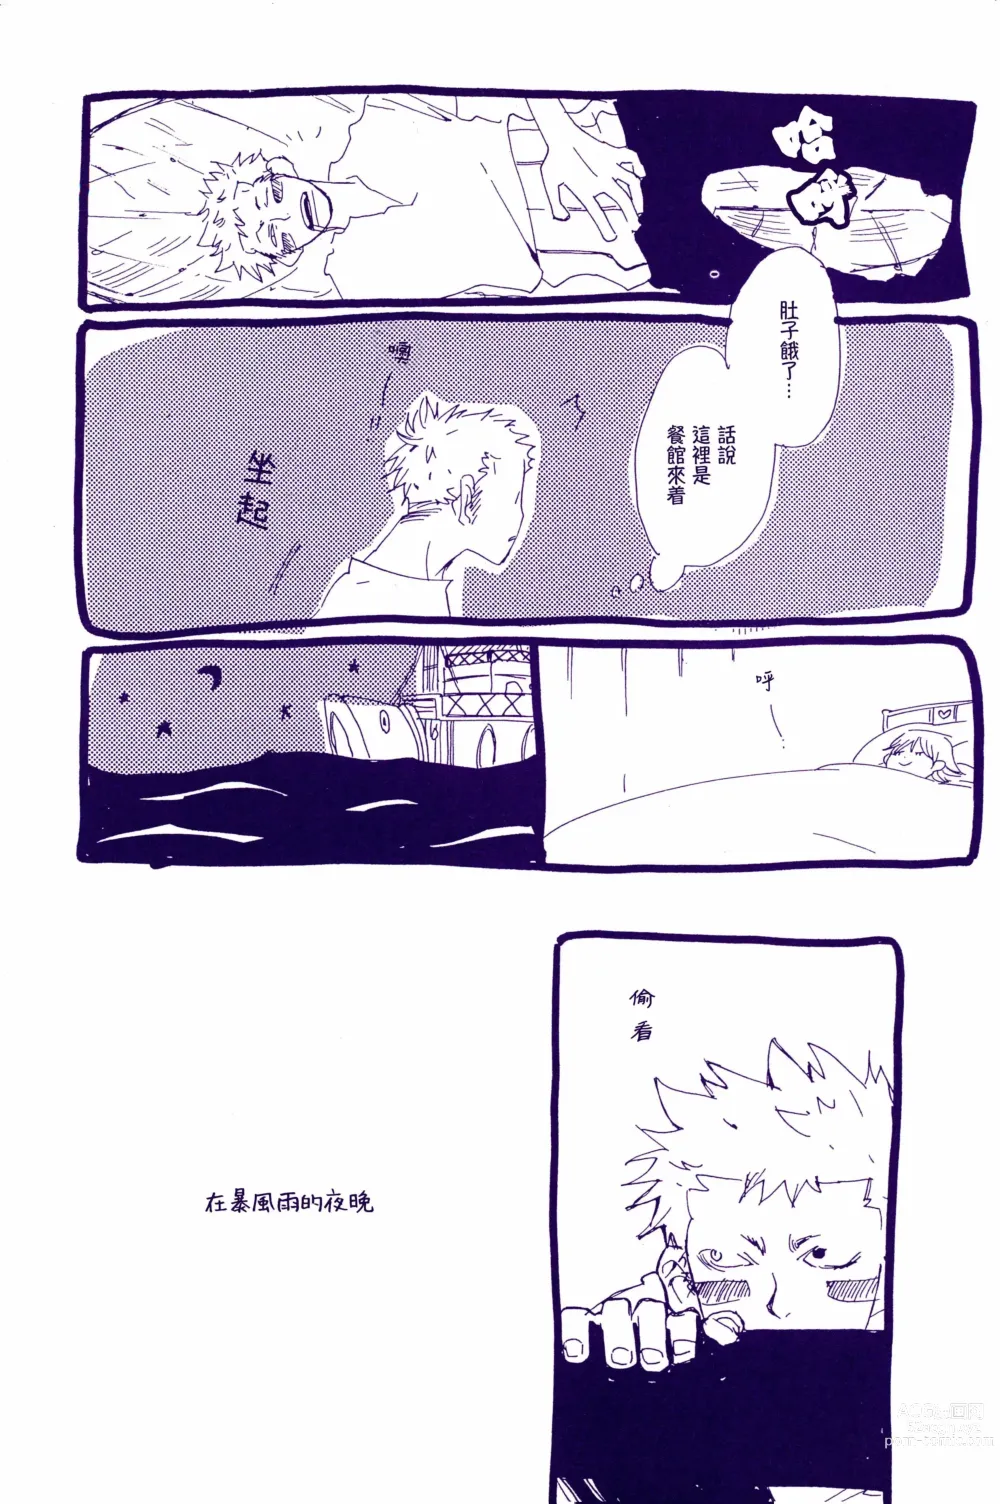 Page 2 of doujinshi 在暴风雨的夜晚 1